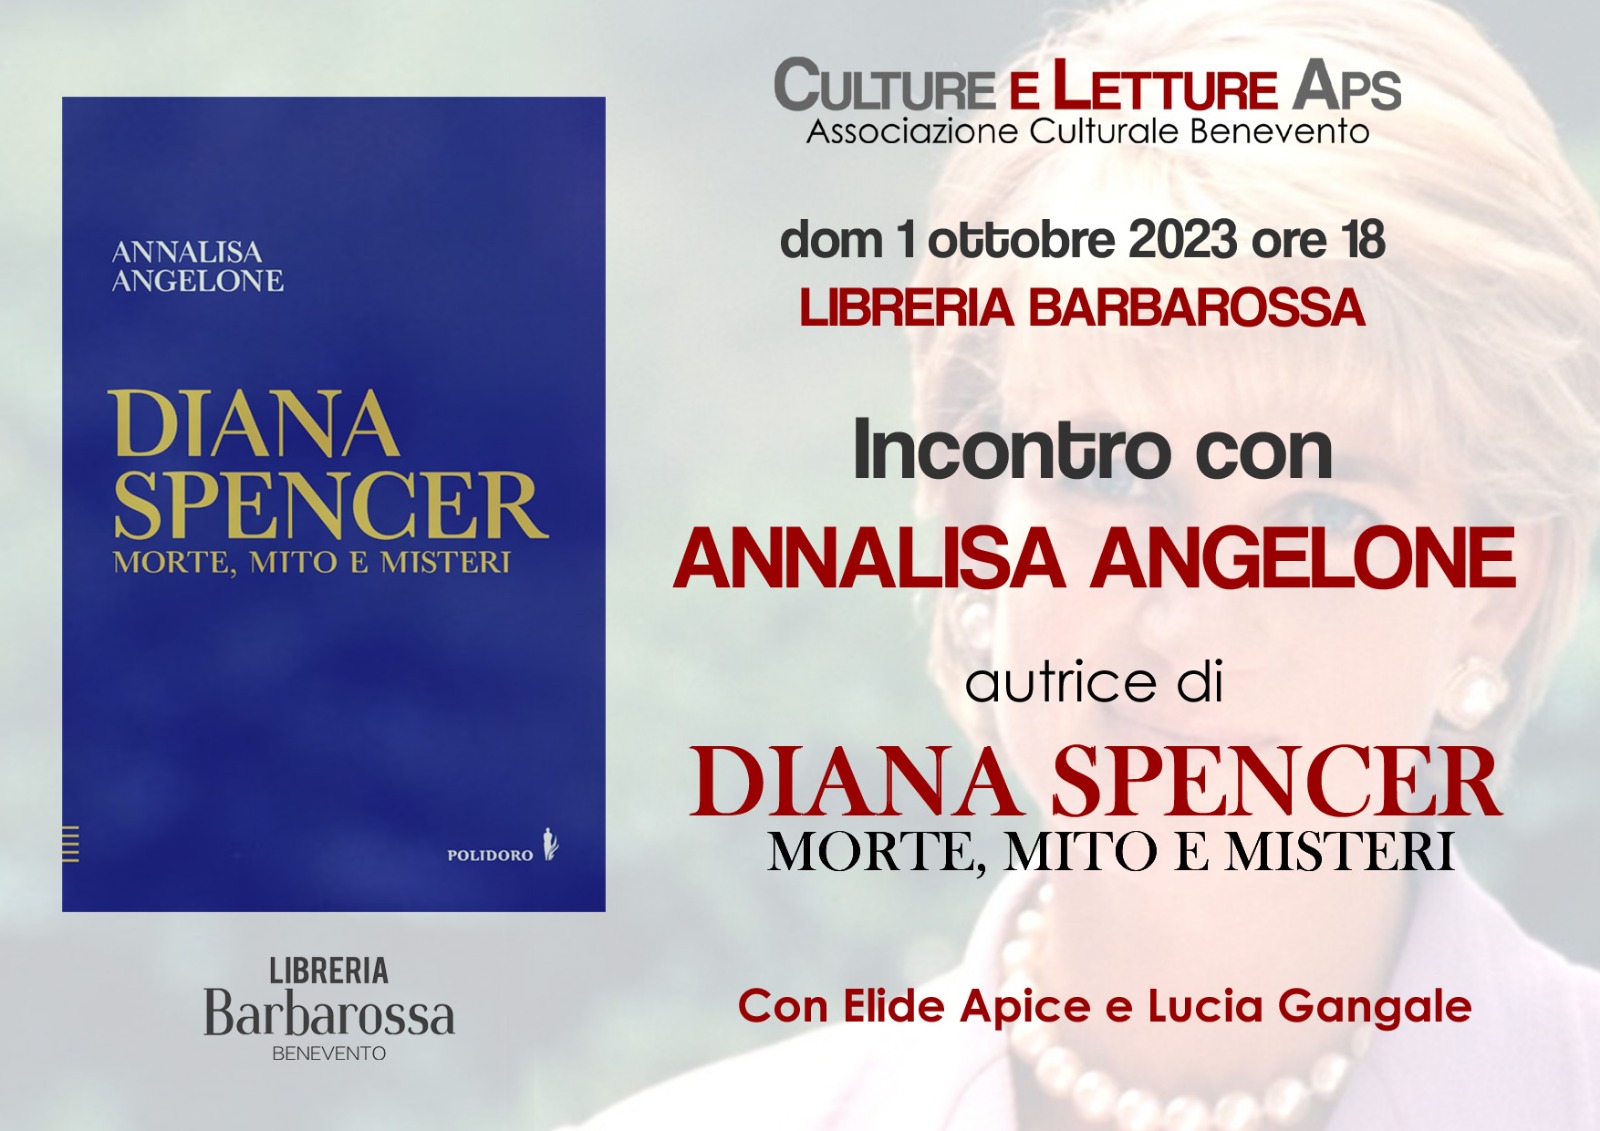 La giornalista Annalisa Angelone presenta il suo ultimo libro “Diana Spencer, mote, mito e misteri”